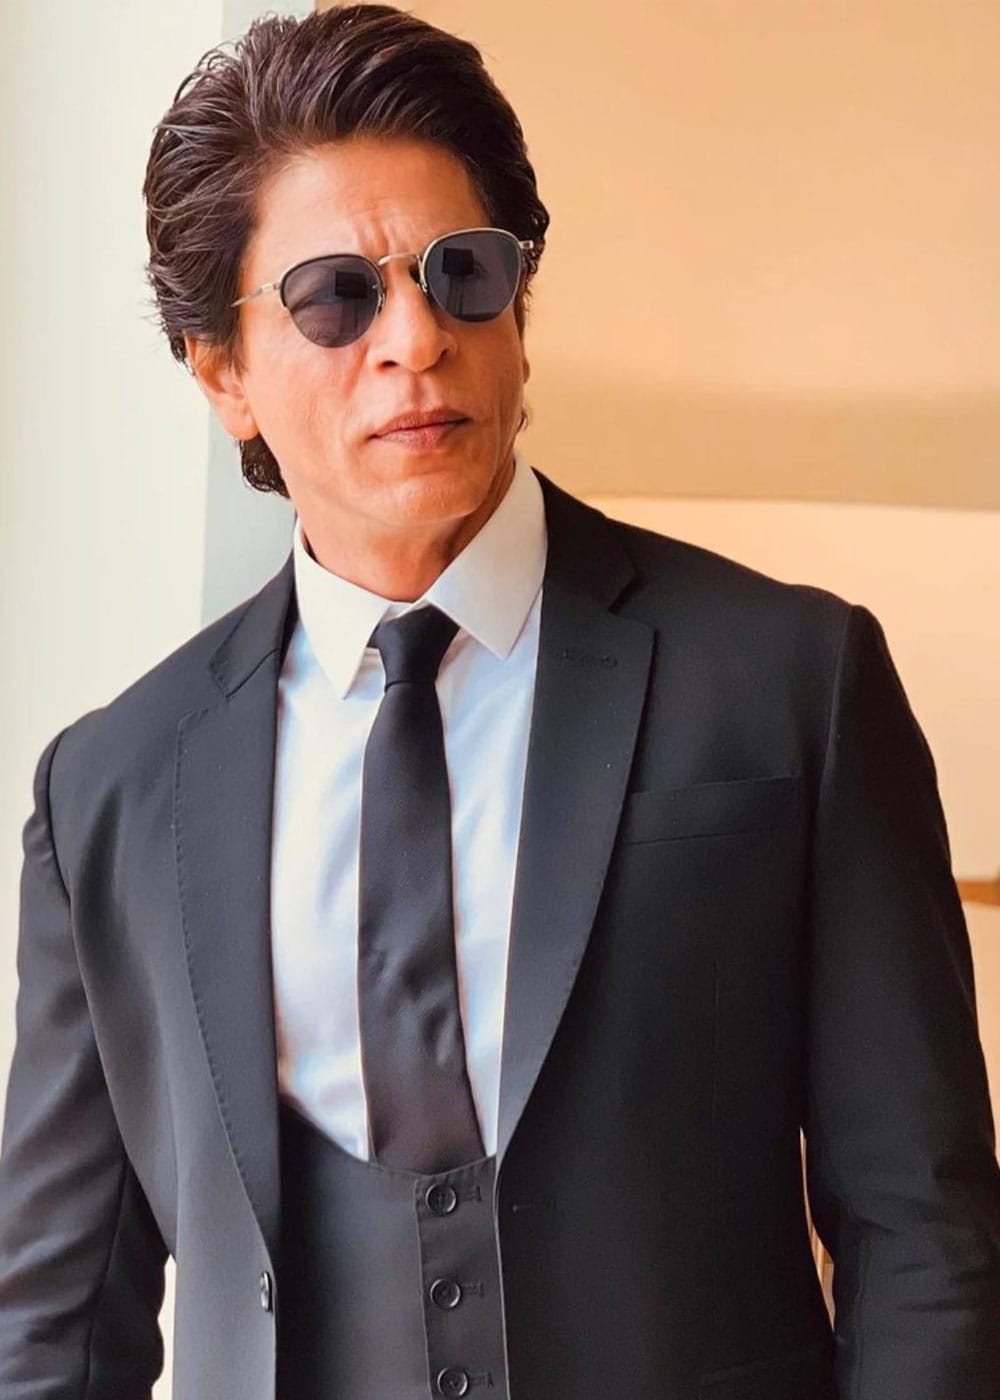 Shah Rukh Khan Movies: Shah Rukh Khan Latest Bollywood Movies (2023)